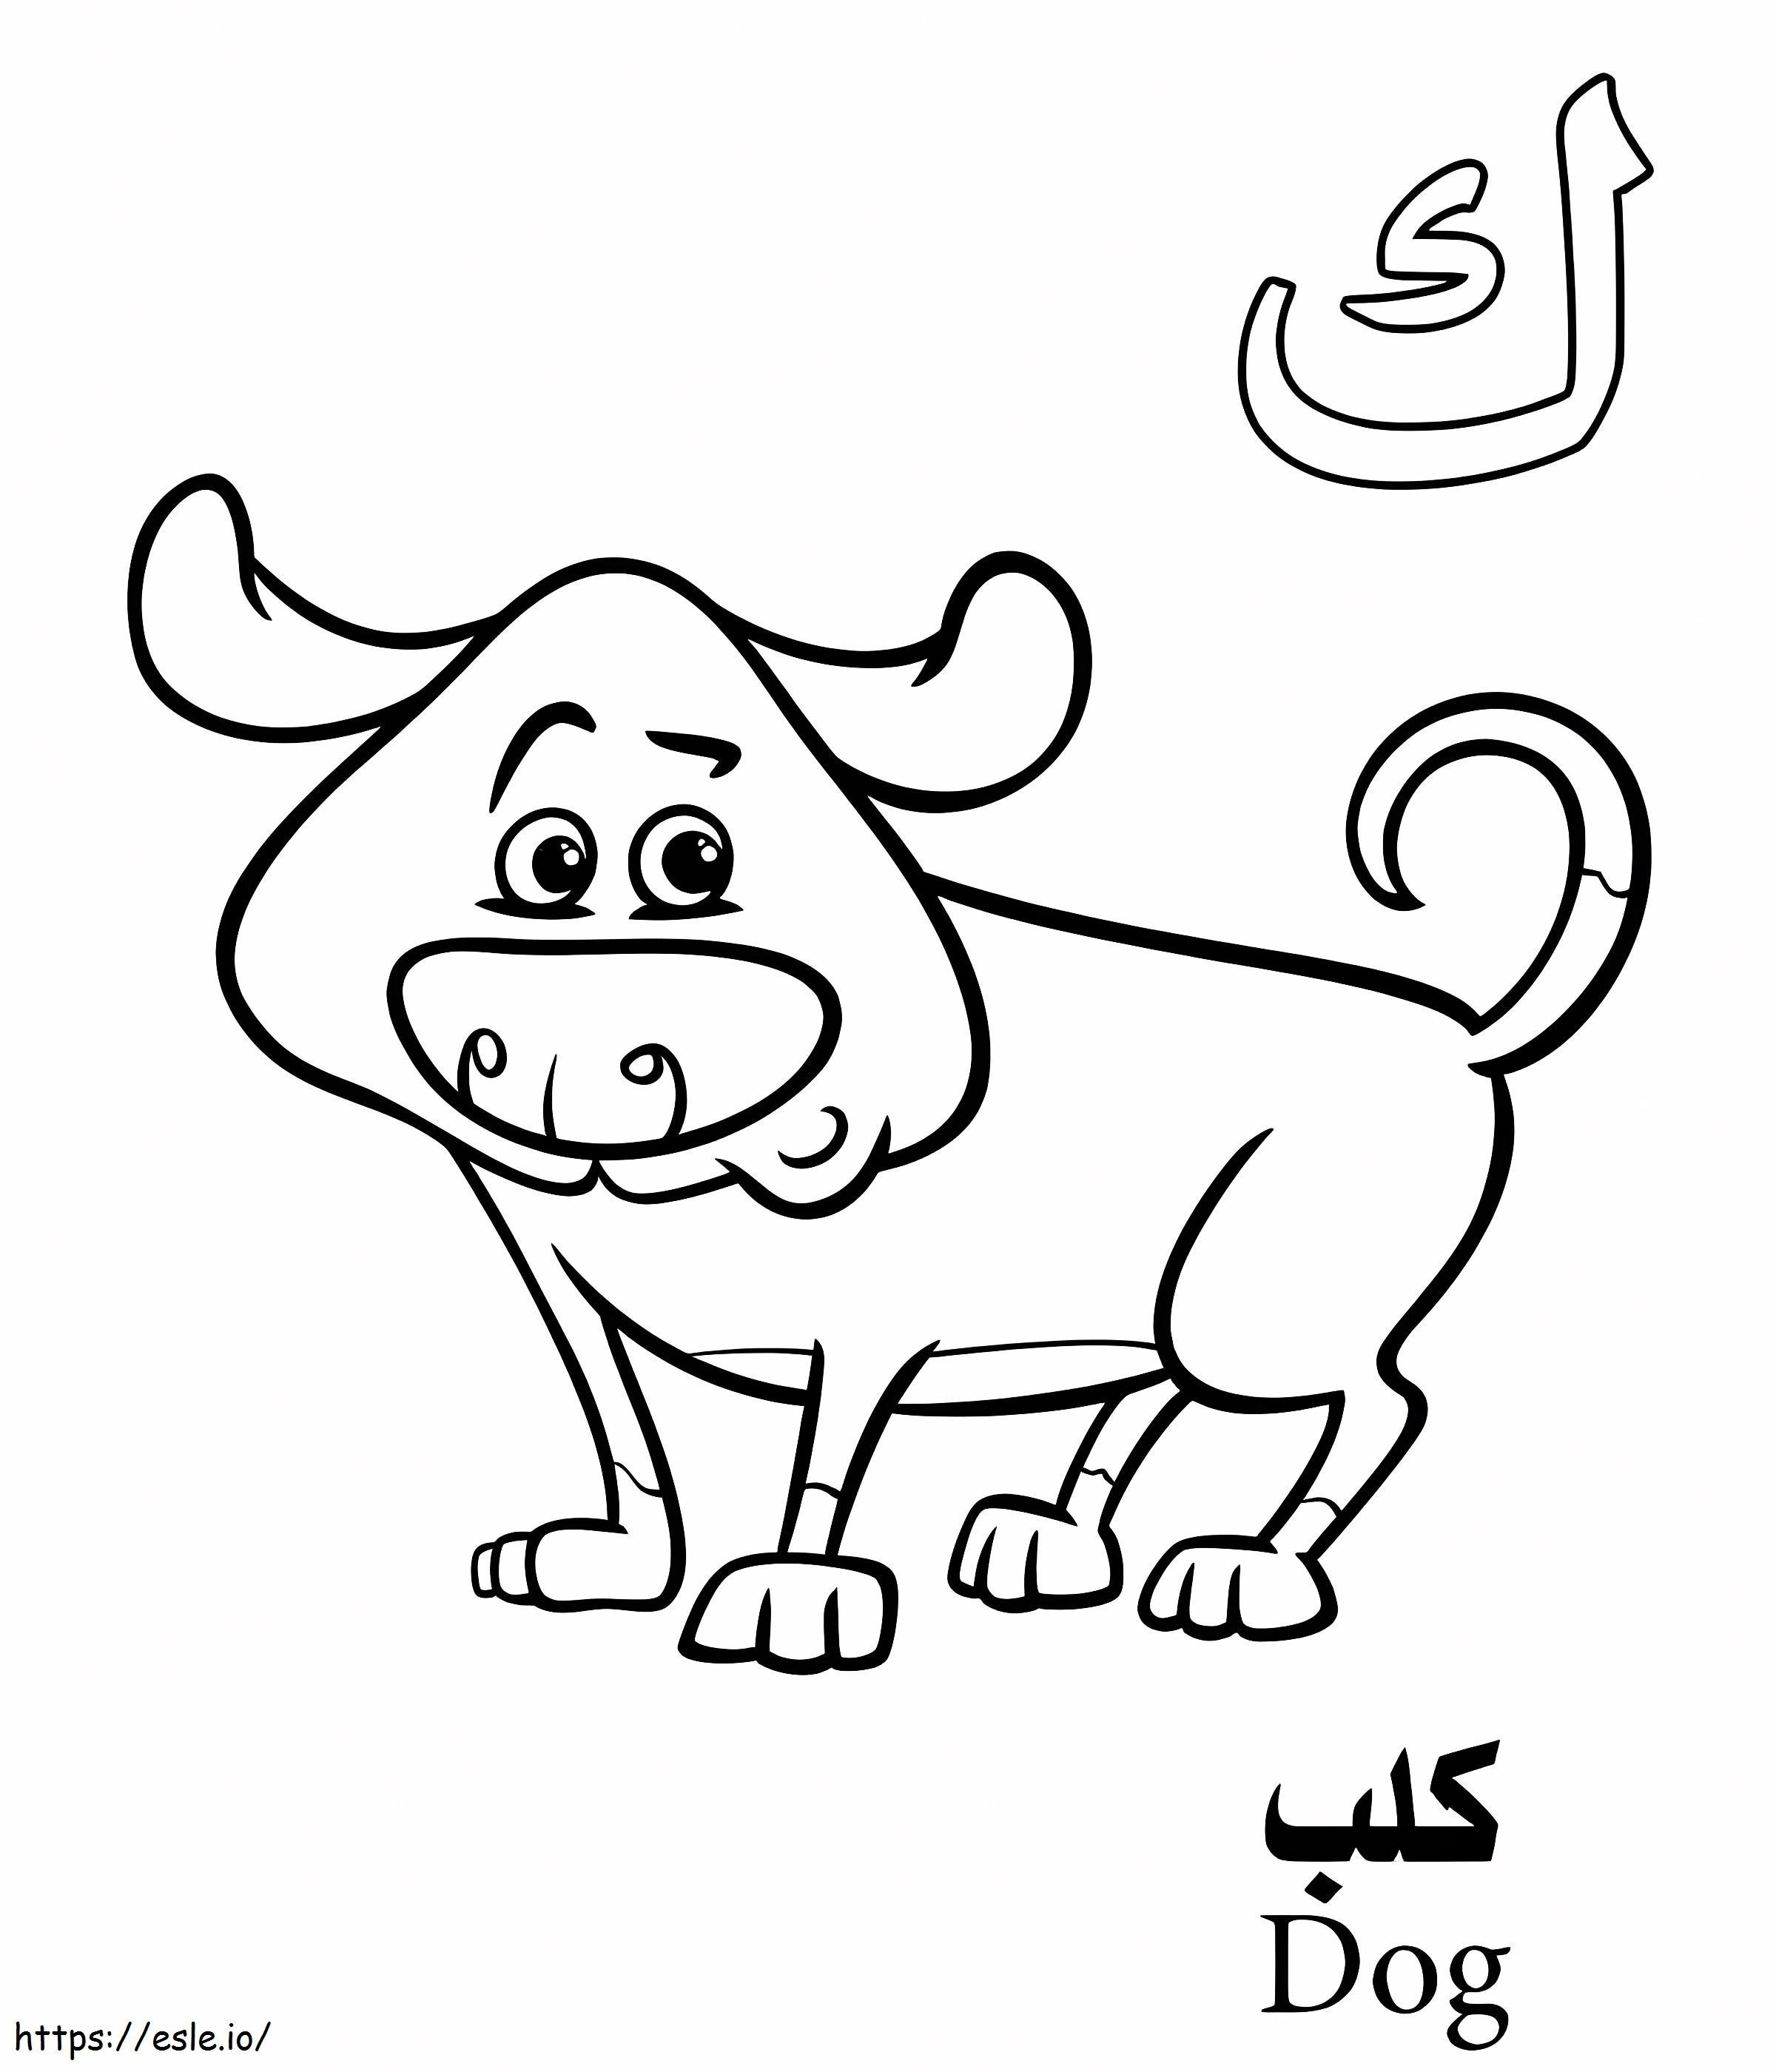 Köpek Arap Alfabesi boyama